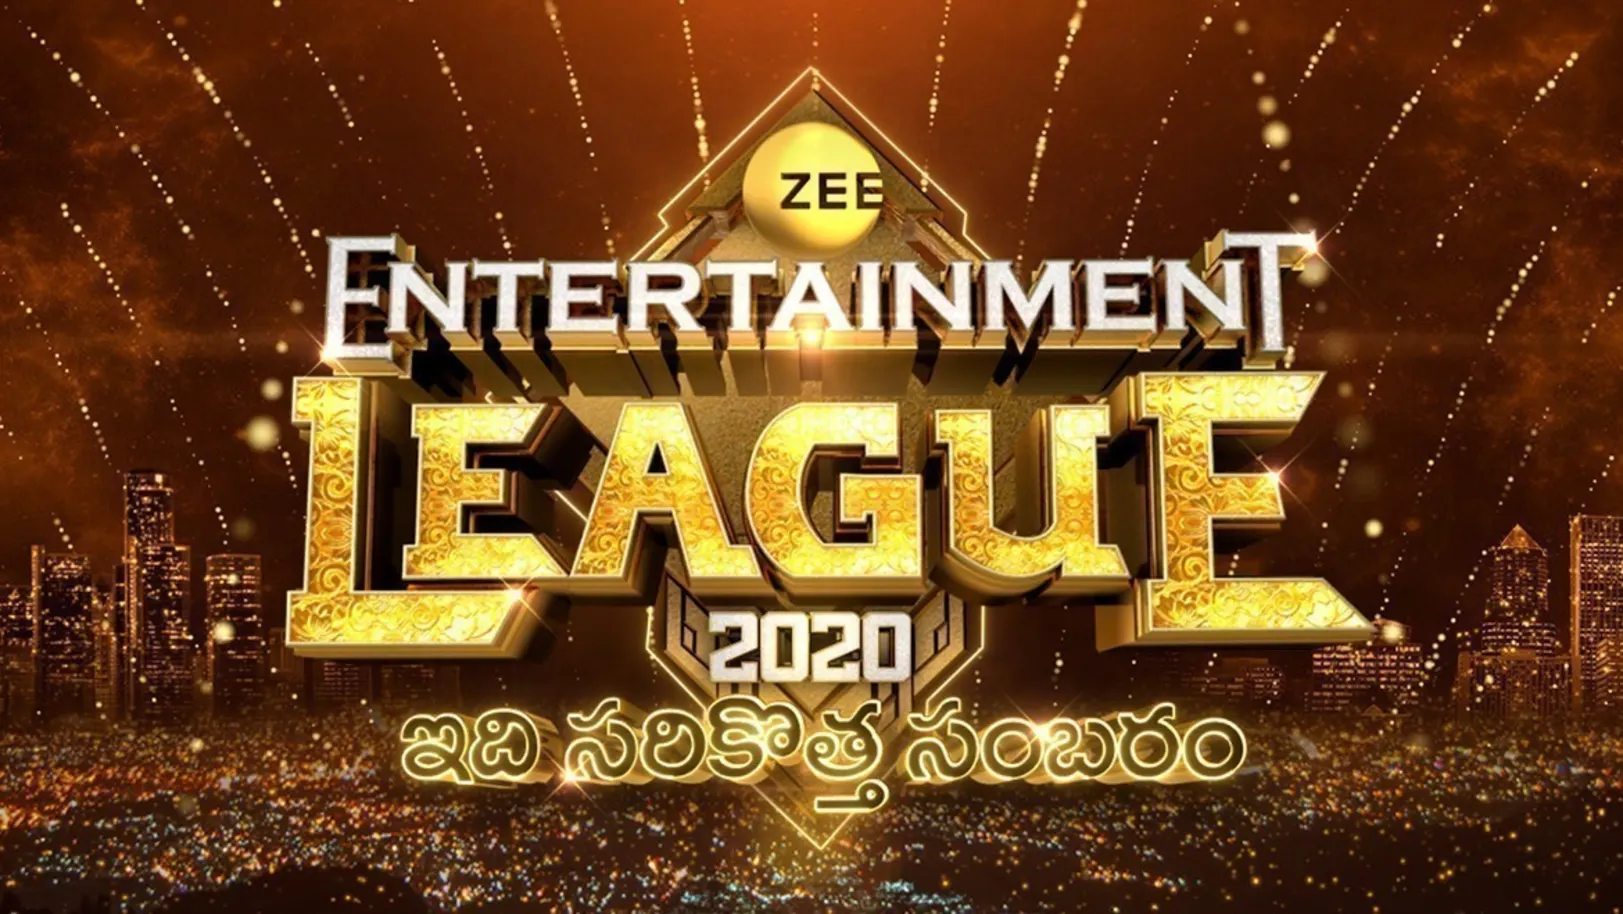 Zee Entertainment League 2020 TV Show